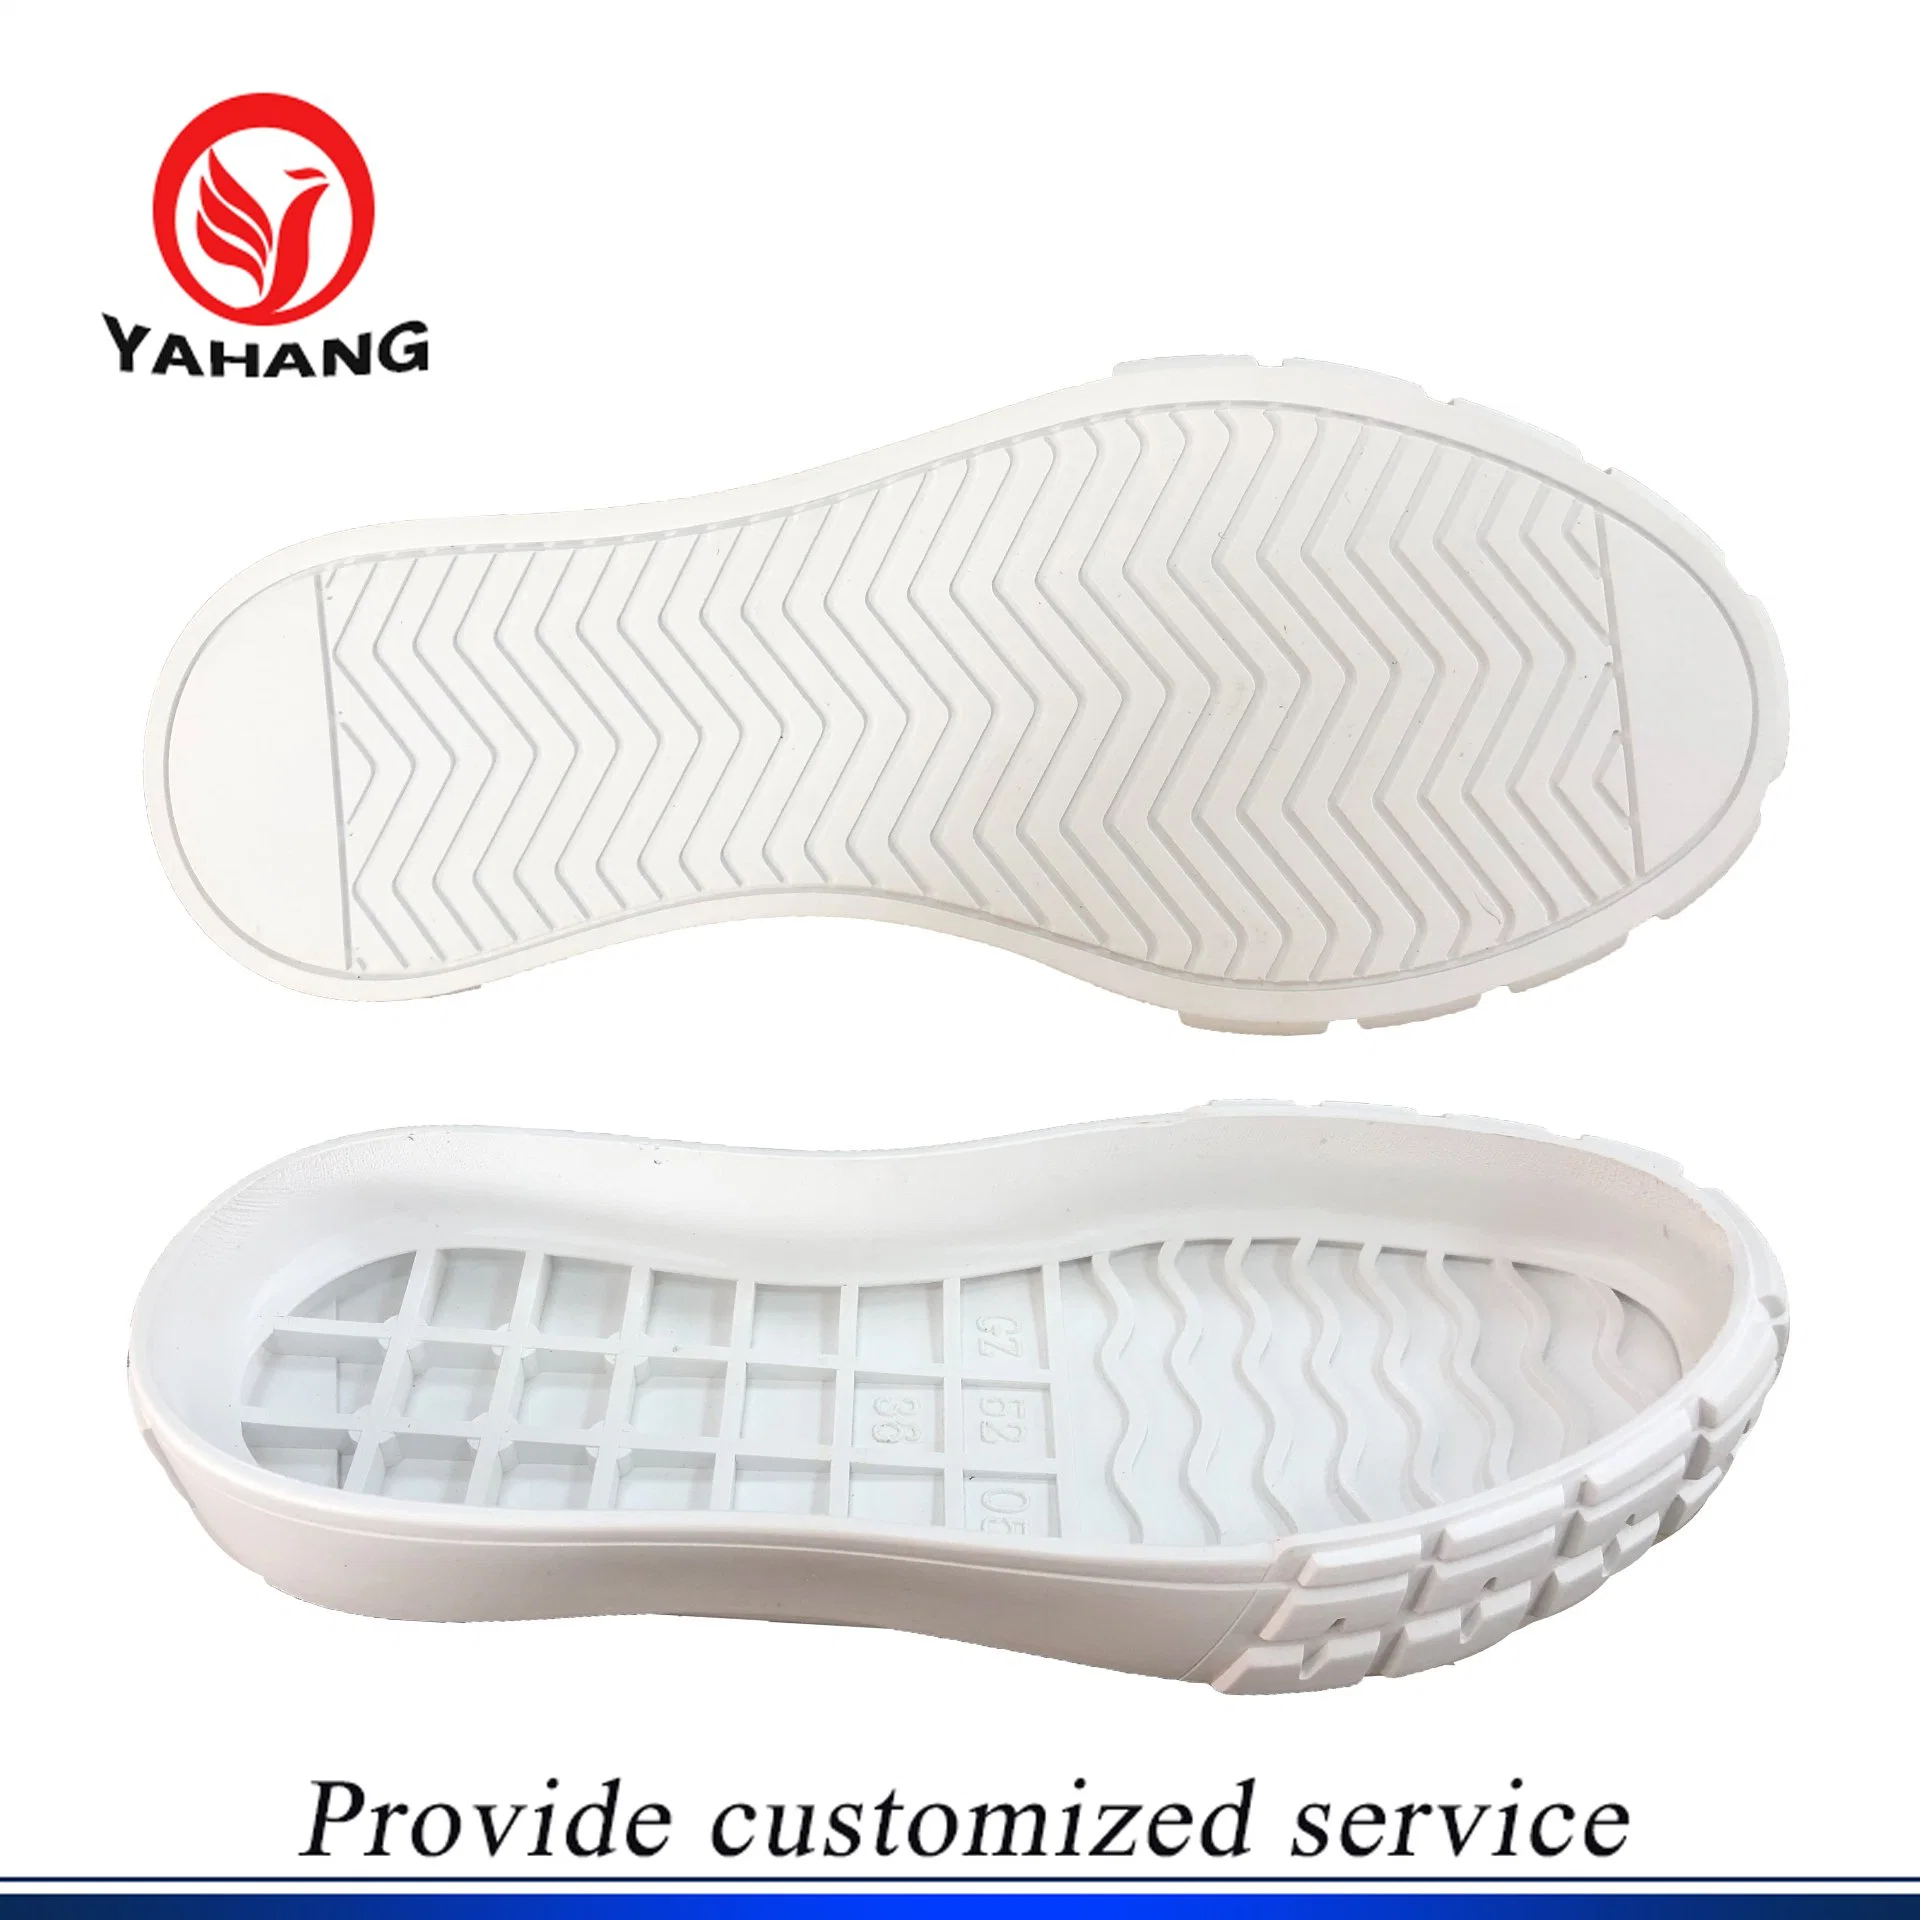 حذاء حذاء من نوع Sneaker قابل للارتداء ومسطحة، بالإضافة إلى النعل الخارجي المطاطي البسيط